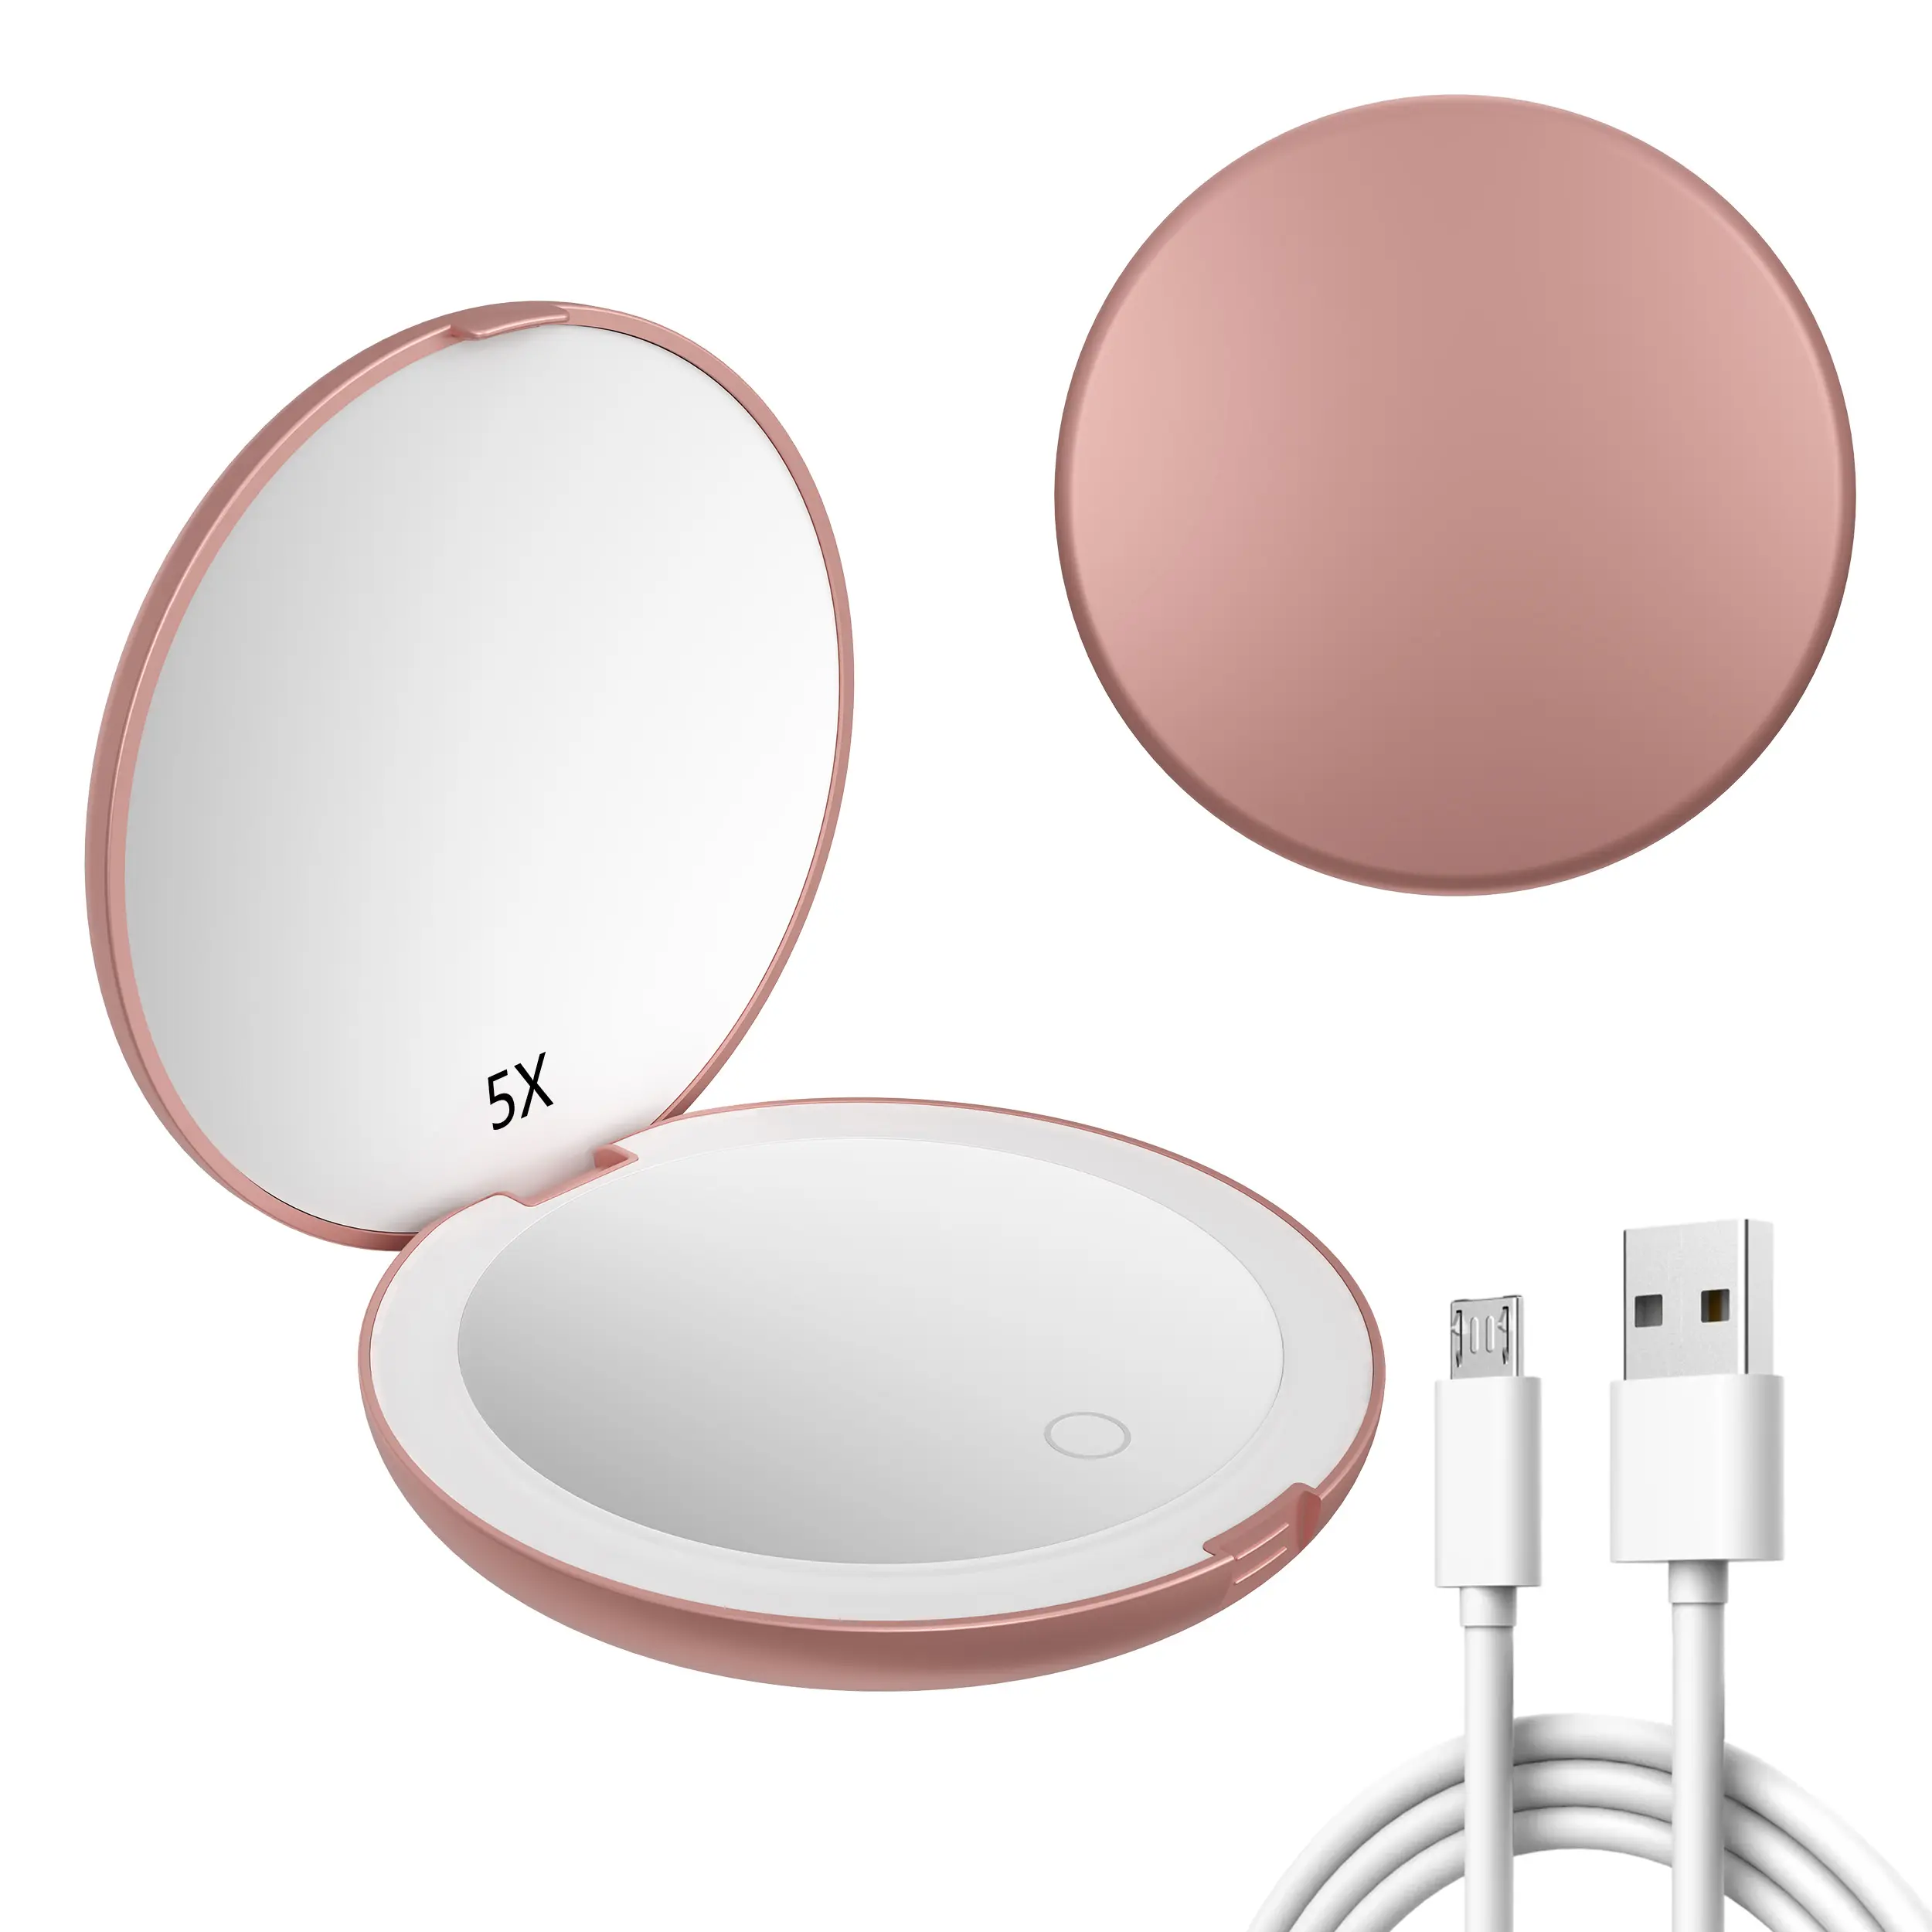 Espelho portátil pequeno de mão para maquiagem, com logotipo personalizado gravado em ouro rosado, regulável por USB, portátil e compacto, com luz LED